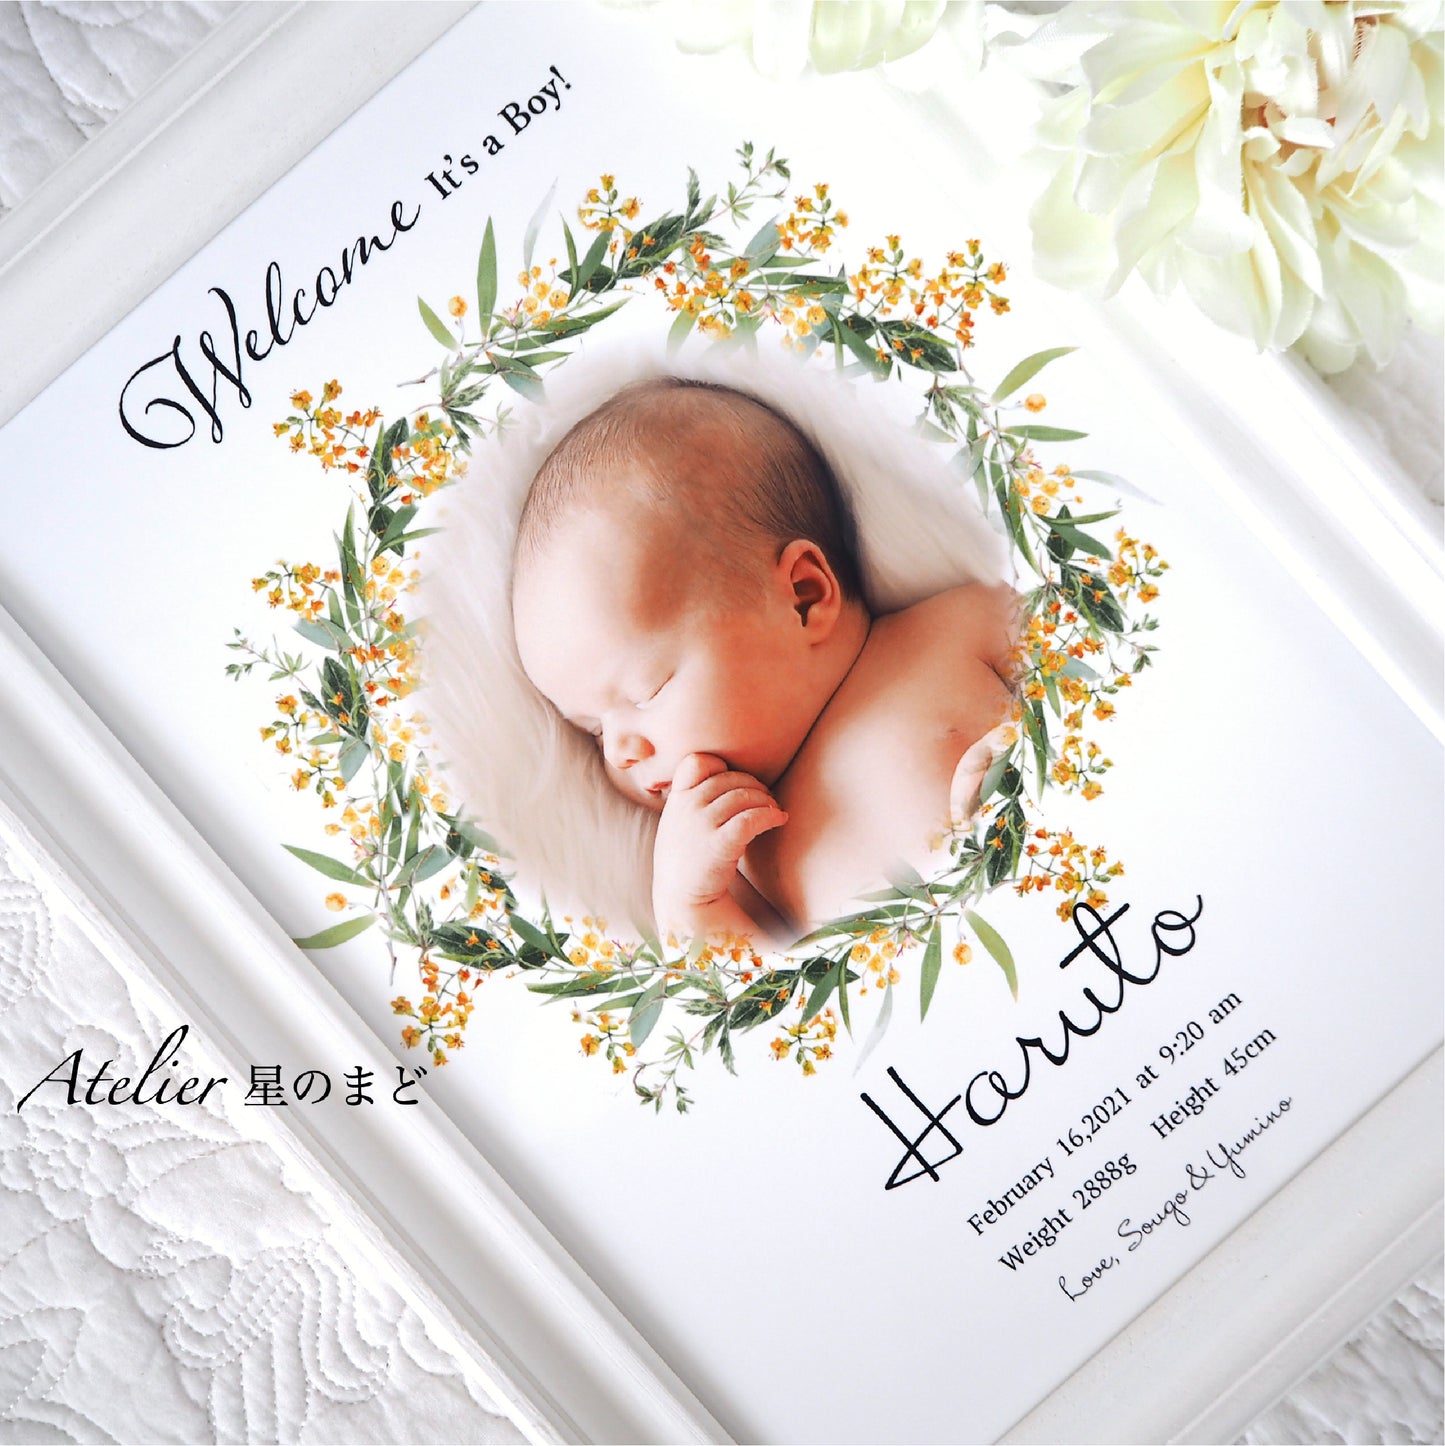 メモリアルポスター 赤ちゃんの記念に　お洒落で可愛い命名書   ミモザのリースに包まれて　プラチナグレード光沢紙で美しさ長持ち